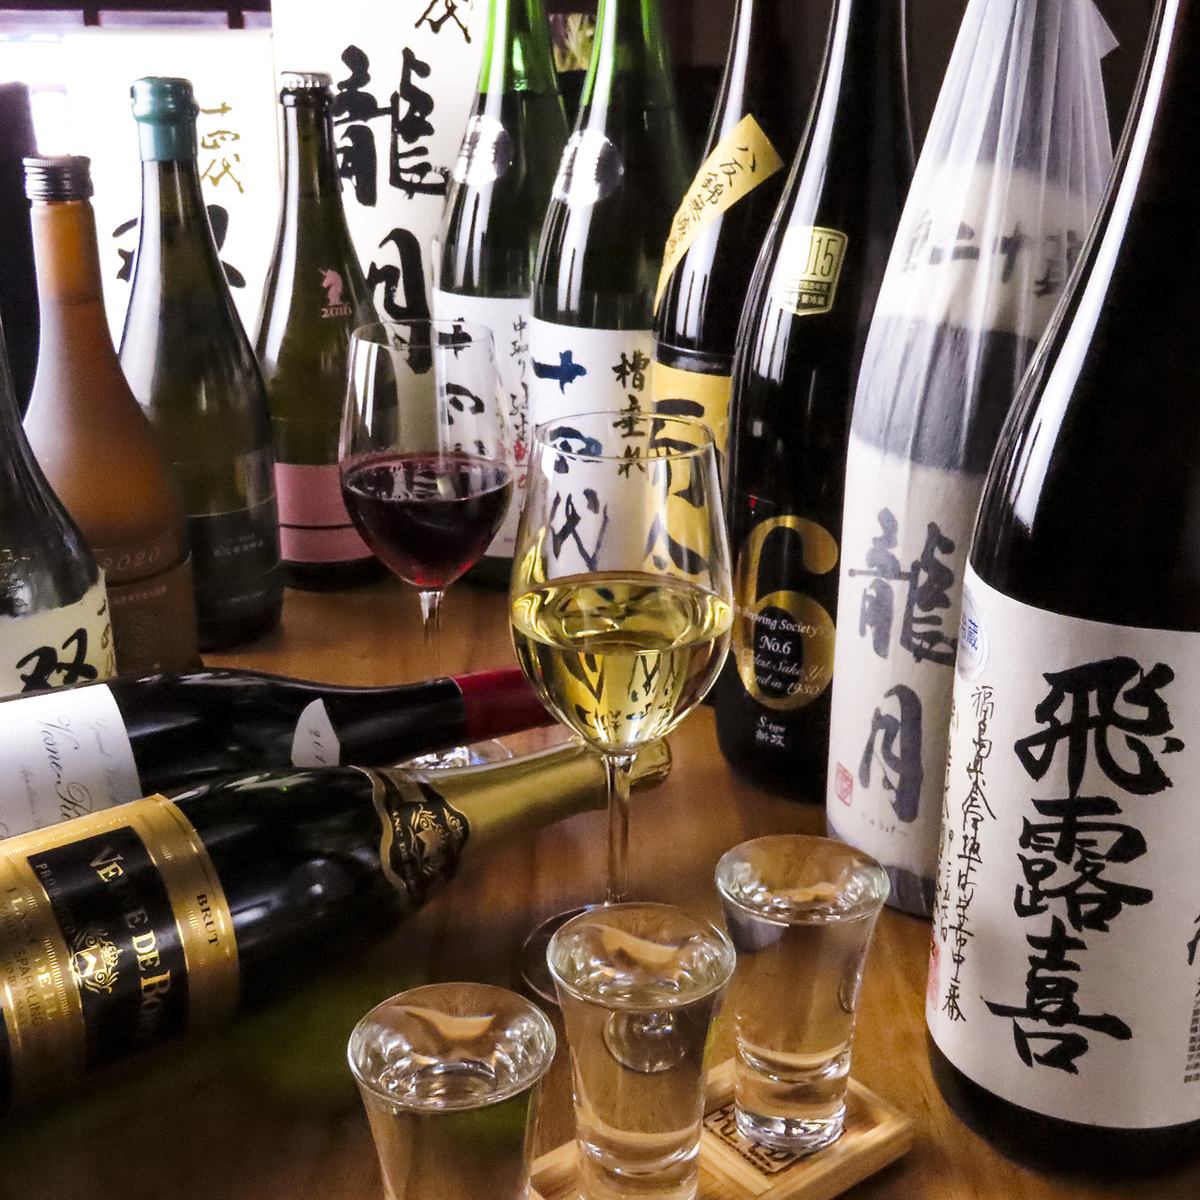 與日本酒相配的菜餚以及從全國各地以合理價格訂購的日本酒♪